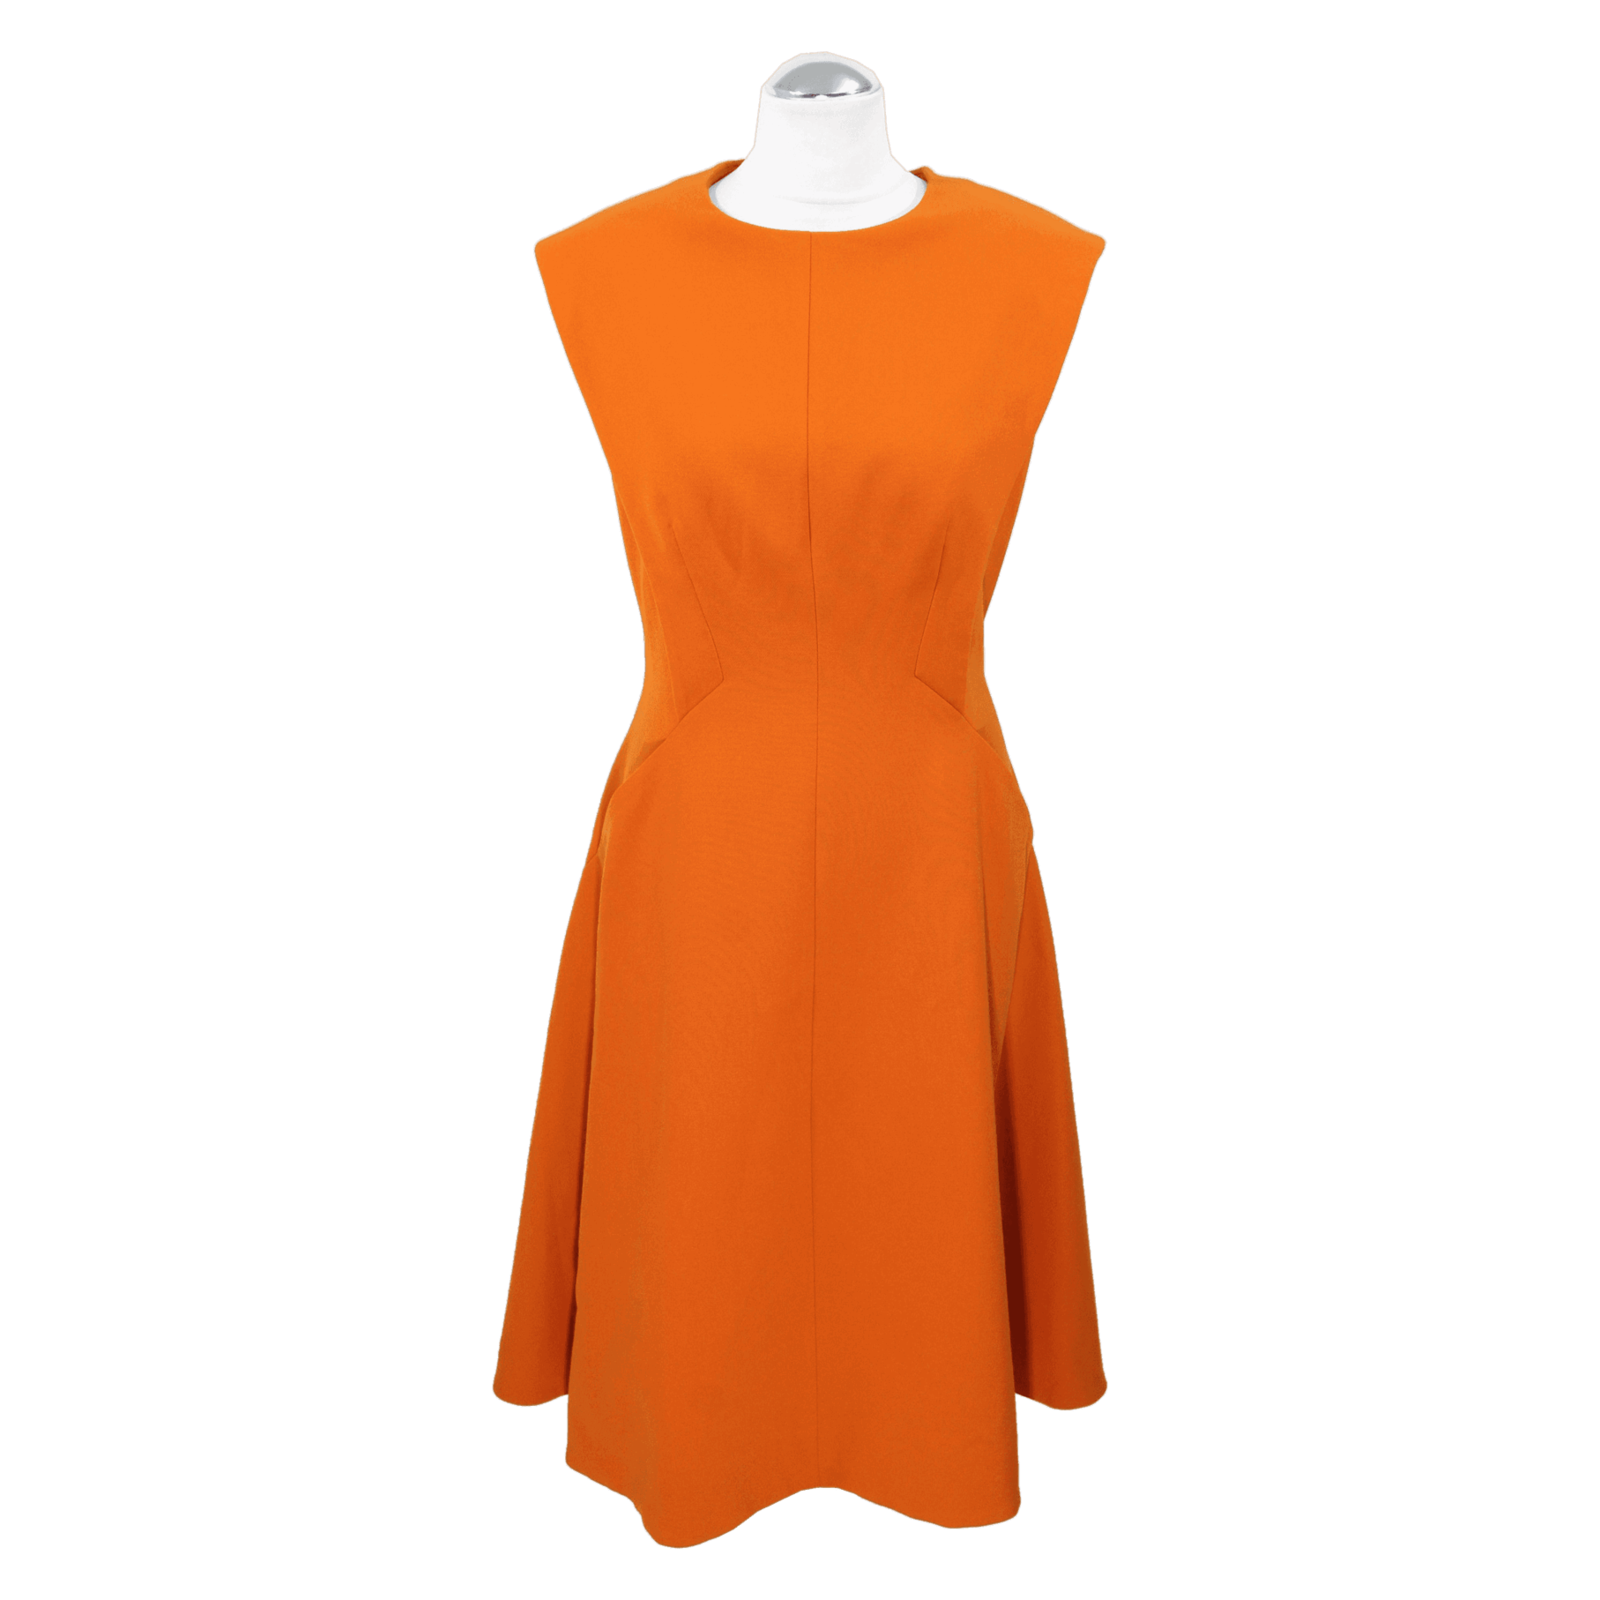 Karen Dress in - Second Hand Karen Millen Dress in Orange buy used for 159€ (4599833)